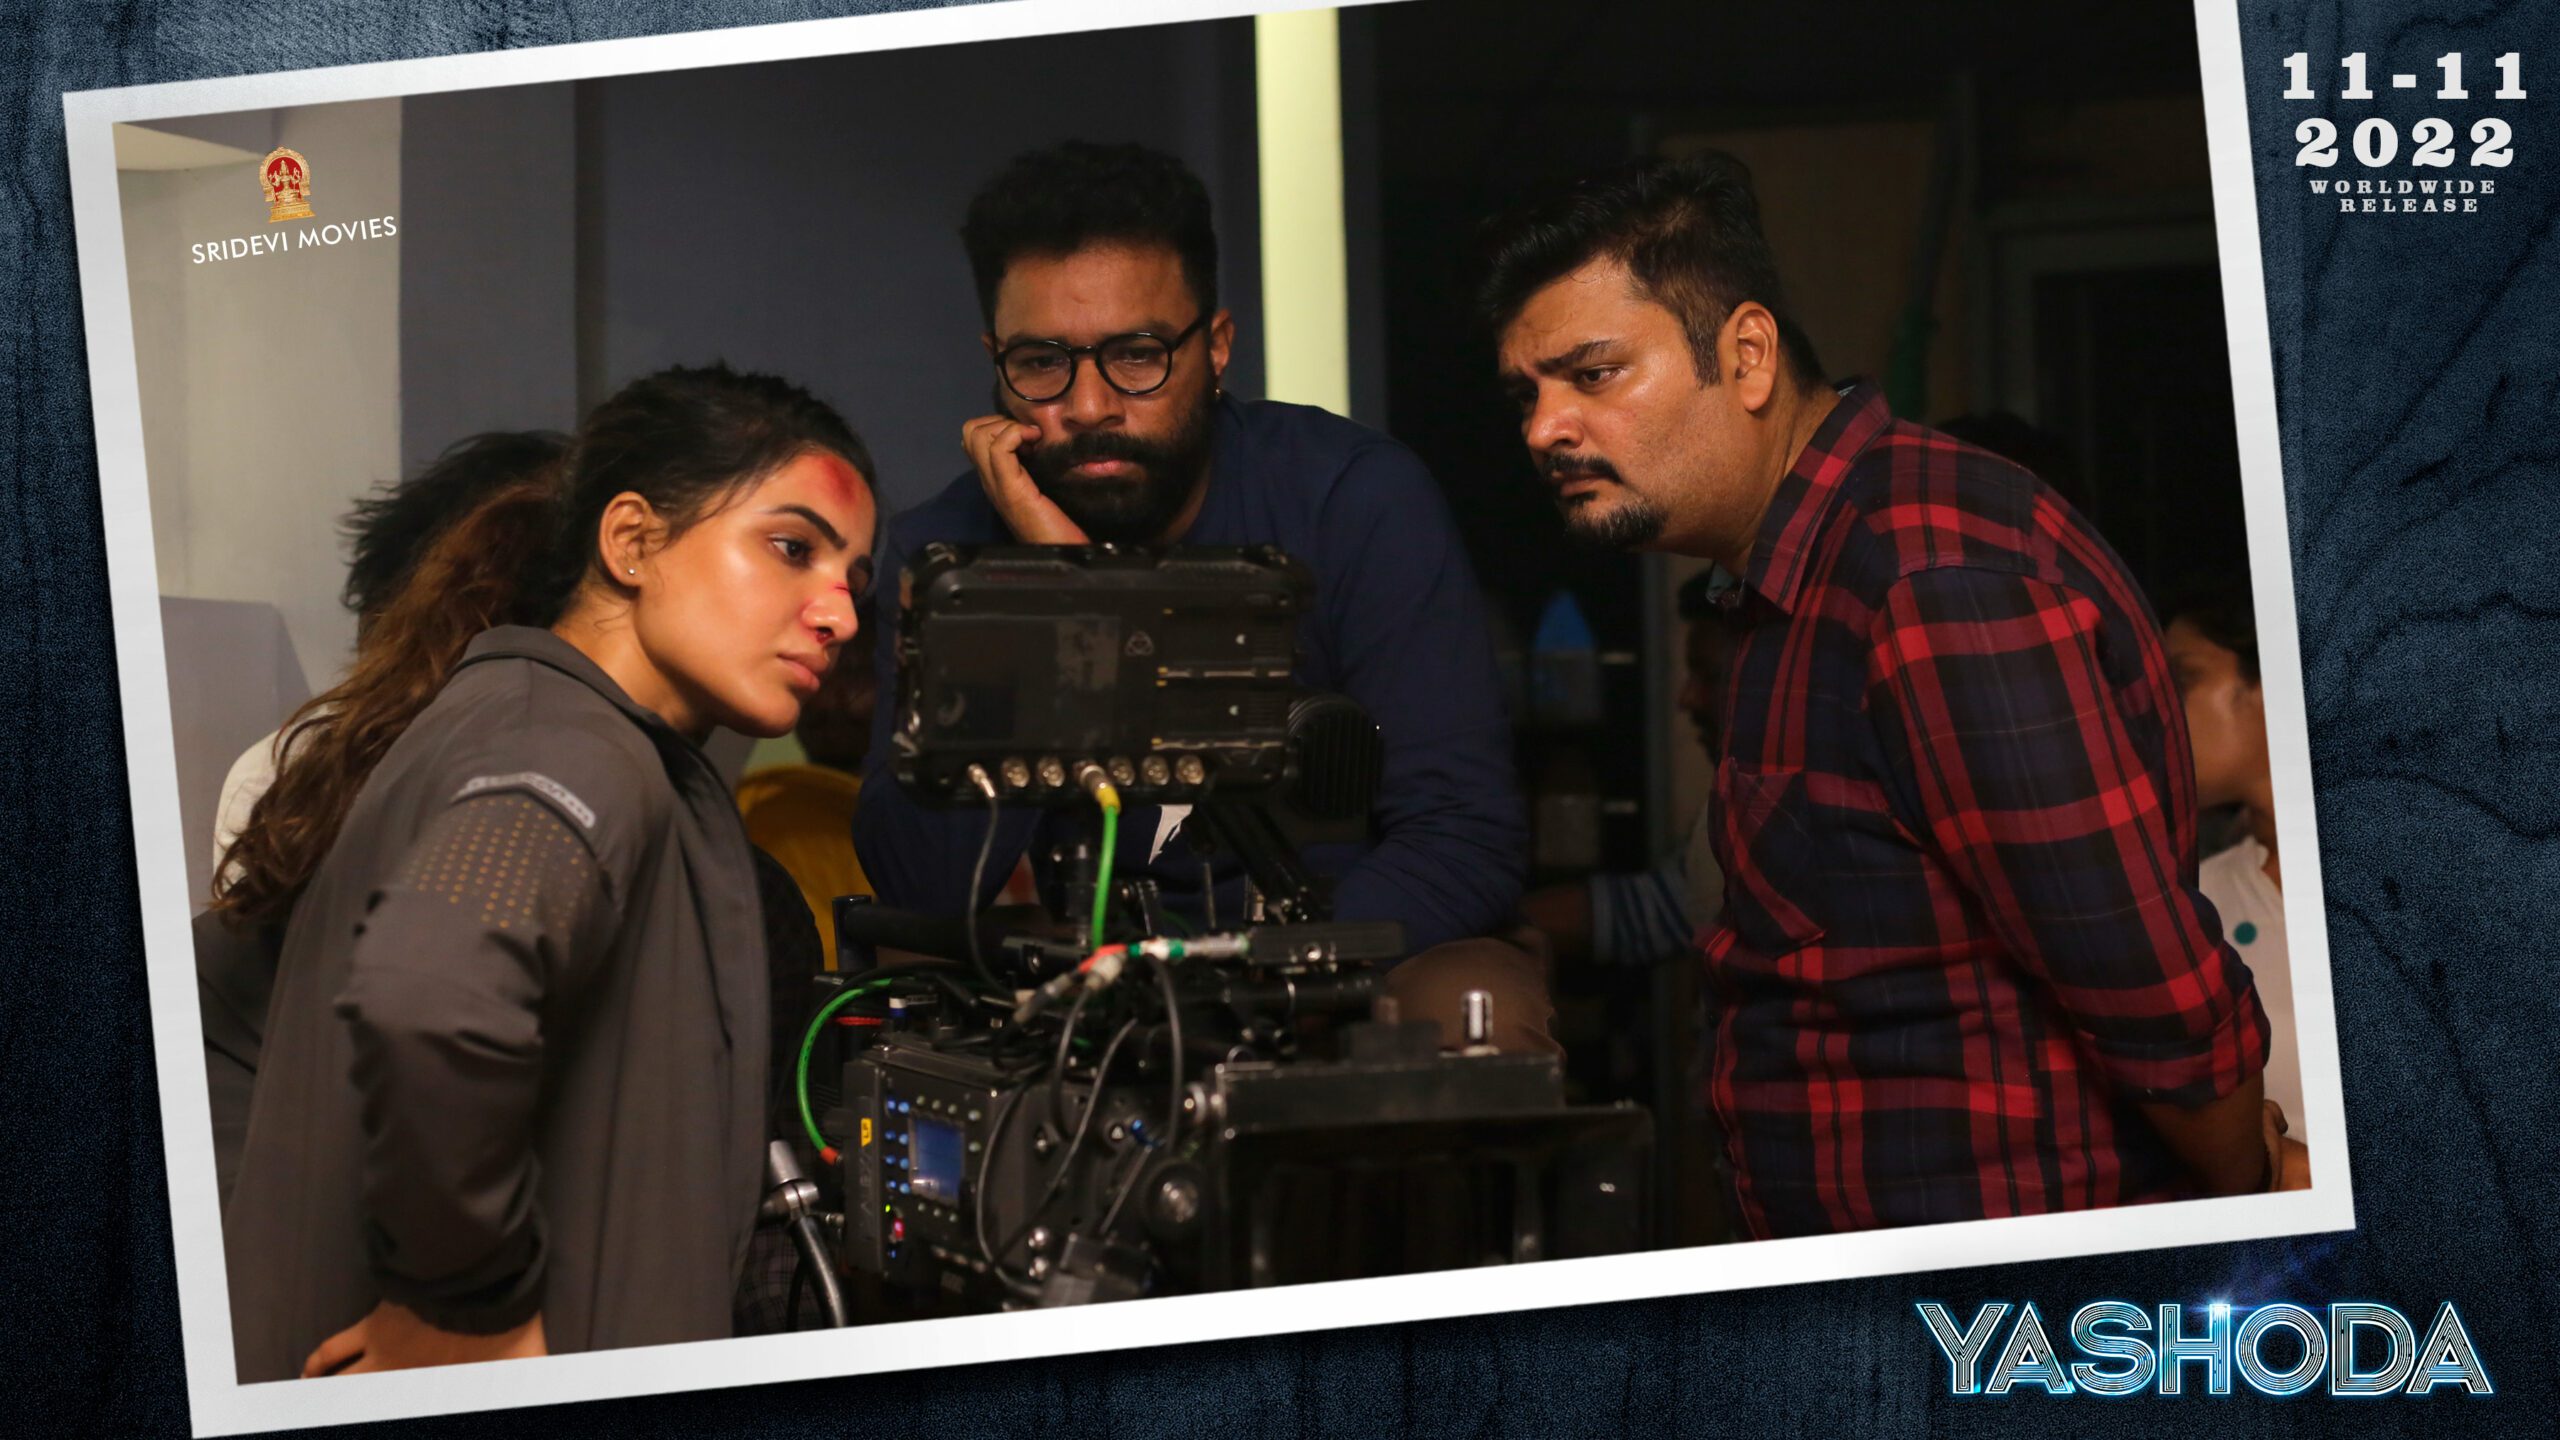 Yashoda Telugu Movie Review - Bollymoviereviewz